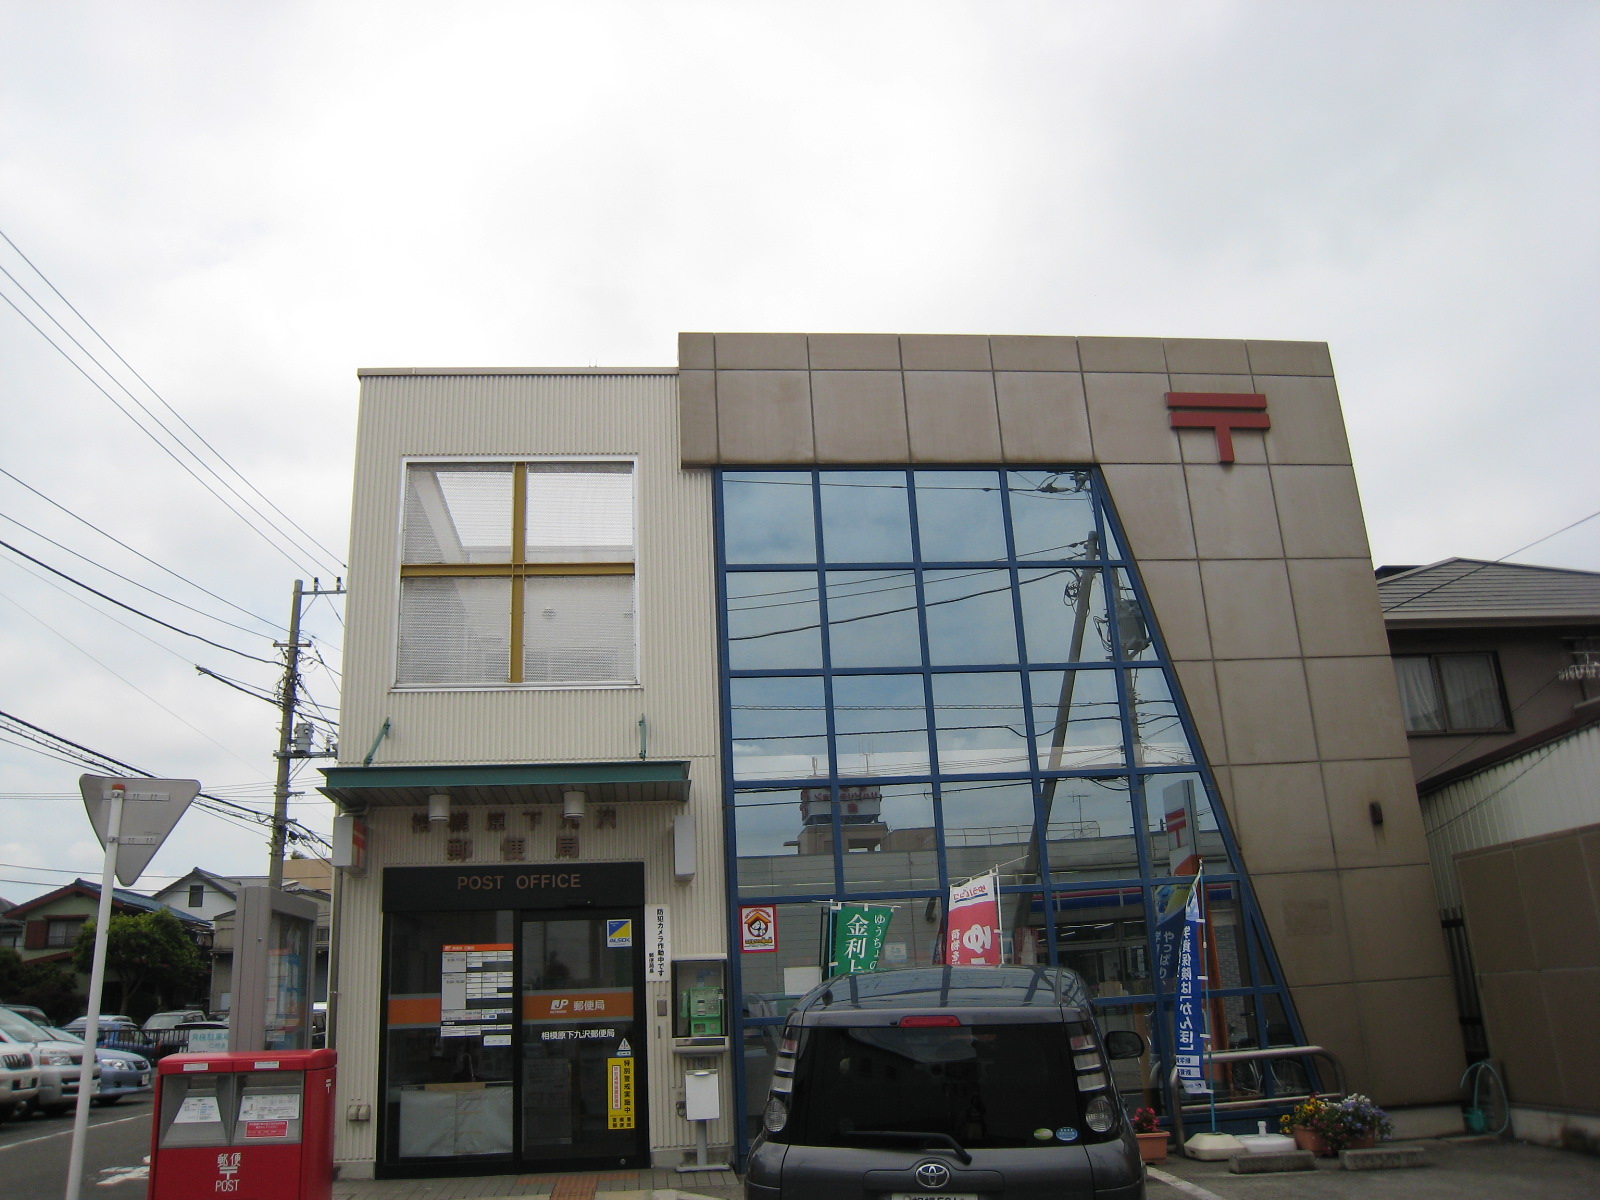 post office. Sagamihara Shimokuzawa 200m to the post office (post office)